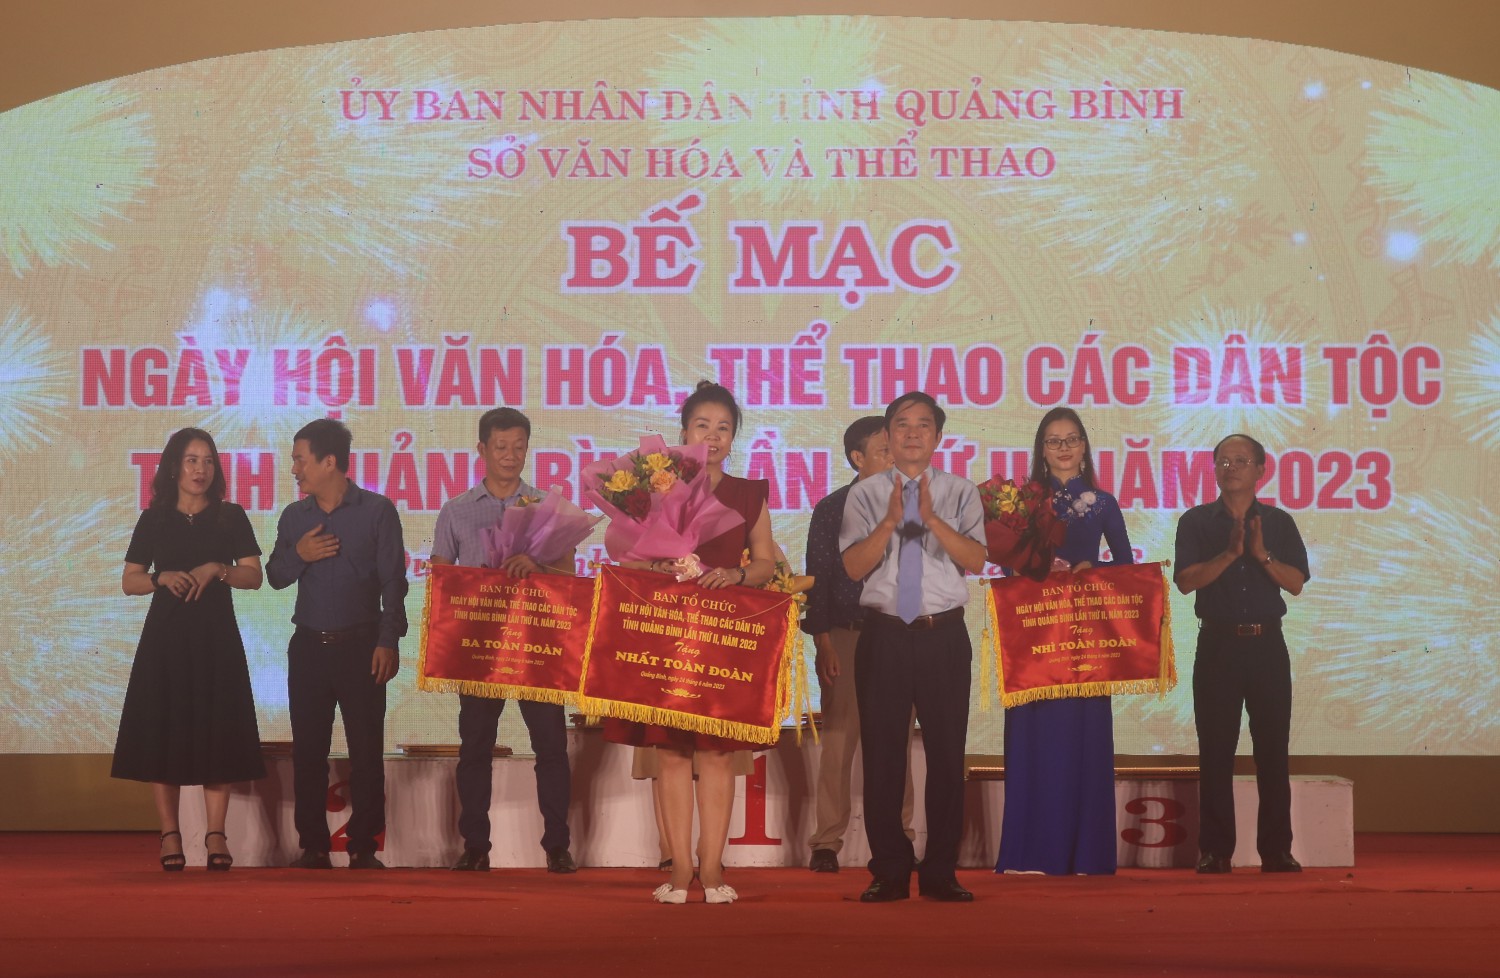 Đồng chí Hà Quốc Phong, Phó Giám đốc Sở Văn hóa và Thể thao trao giải nhất toàn đoàn cho đơn vị thành phố Đồng Hới